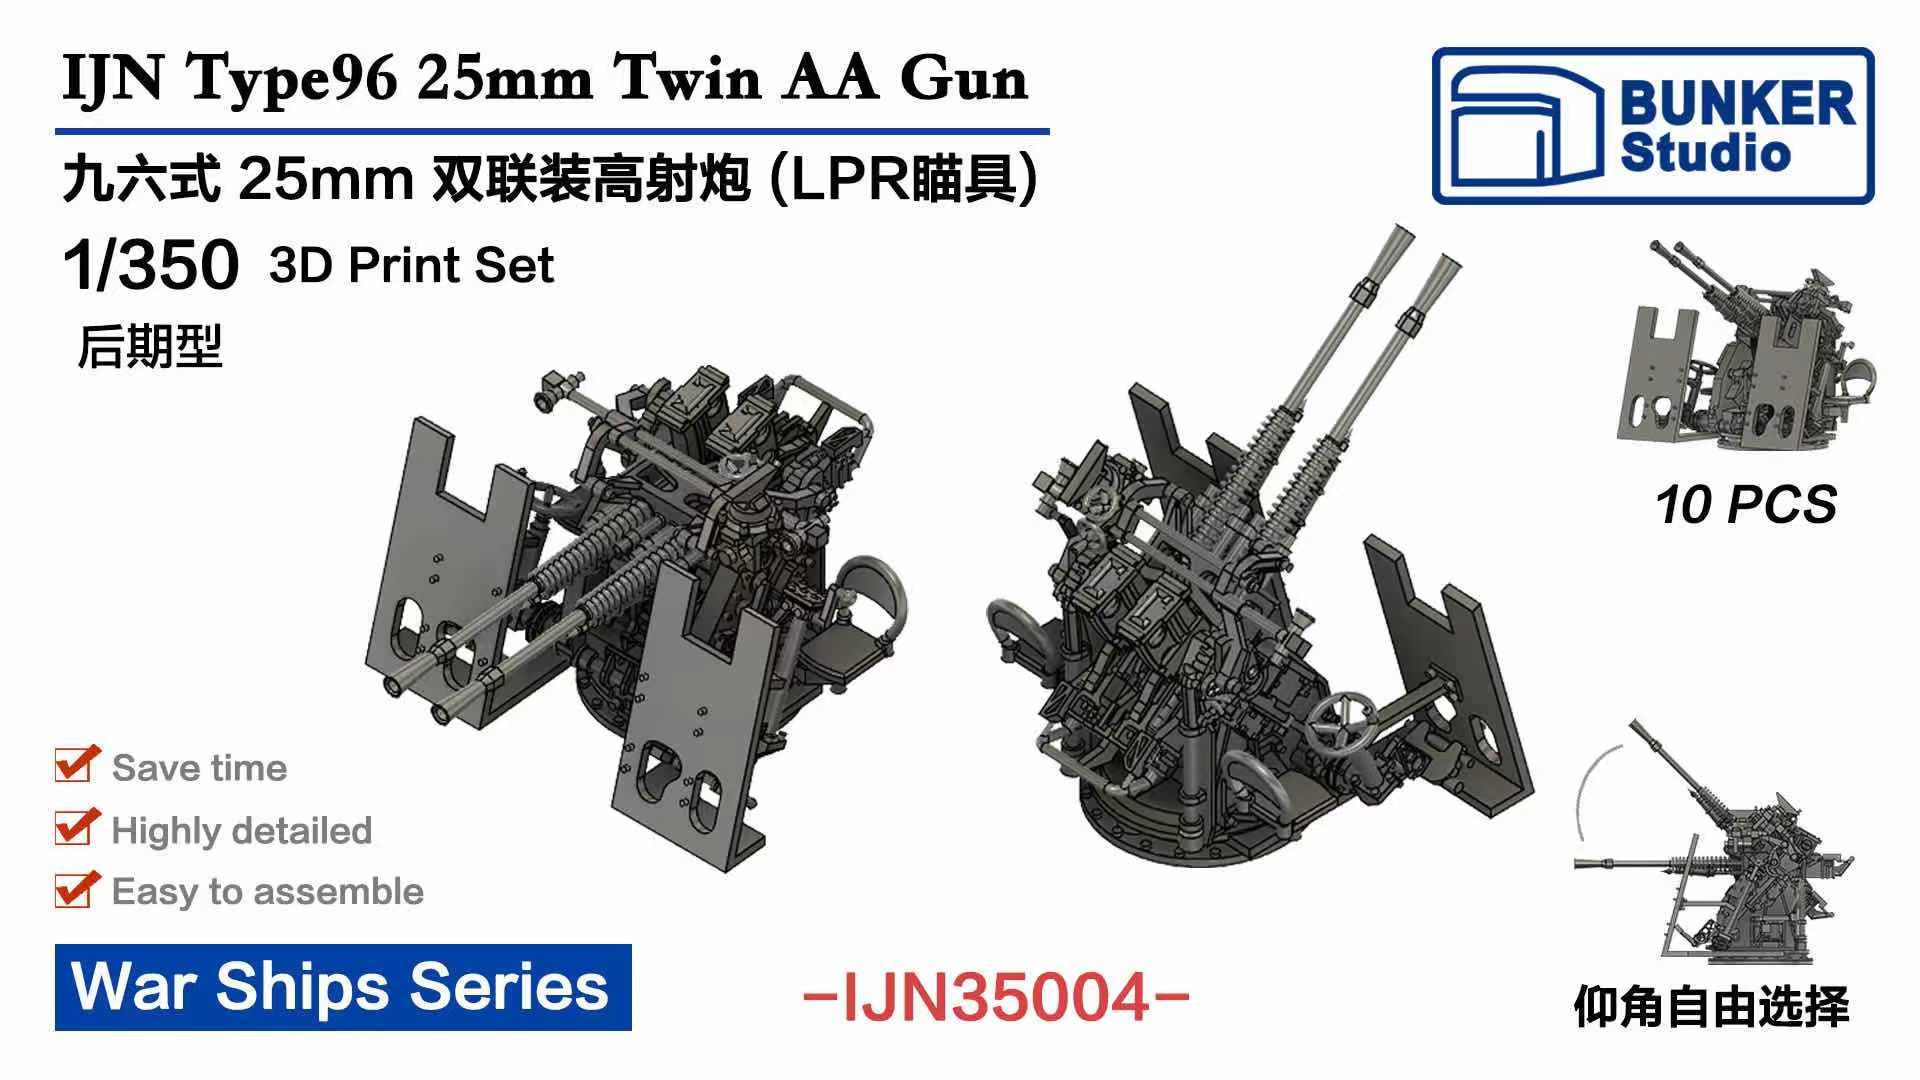 1/350 日本海軍 九六式二十五粍連装機銃 LPR照準器 (後期型)w/防盾